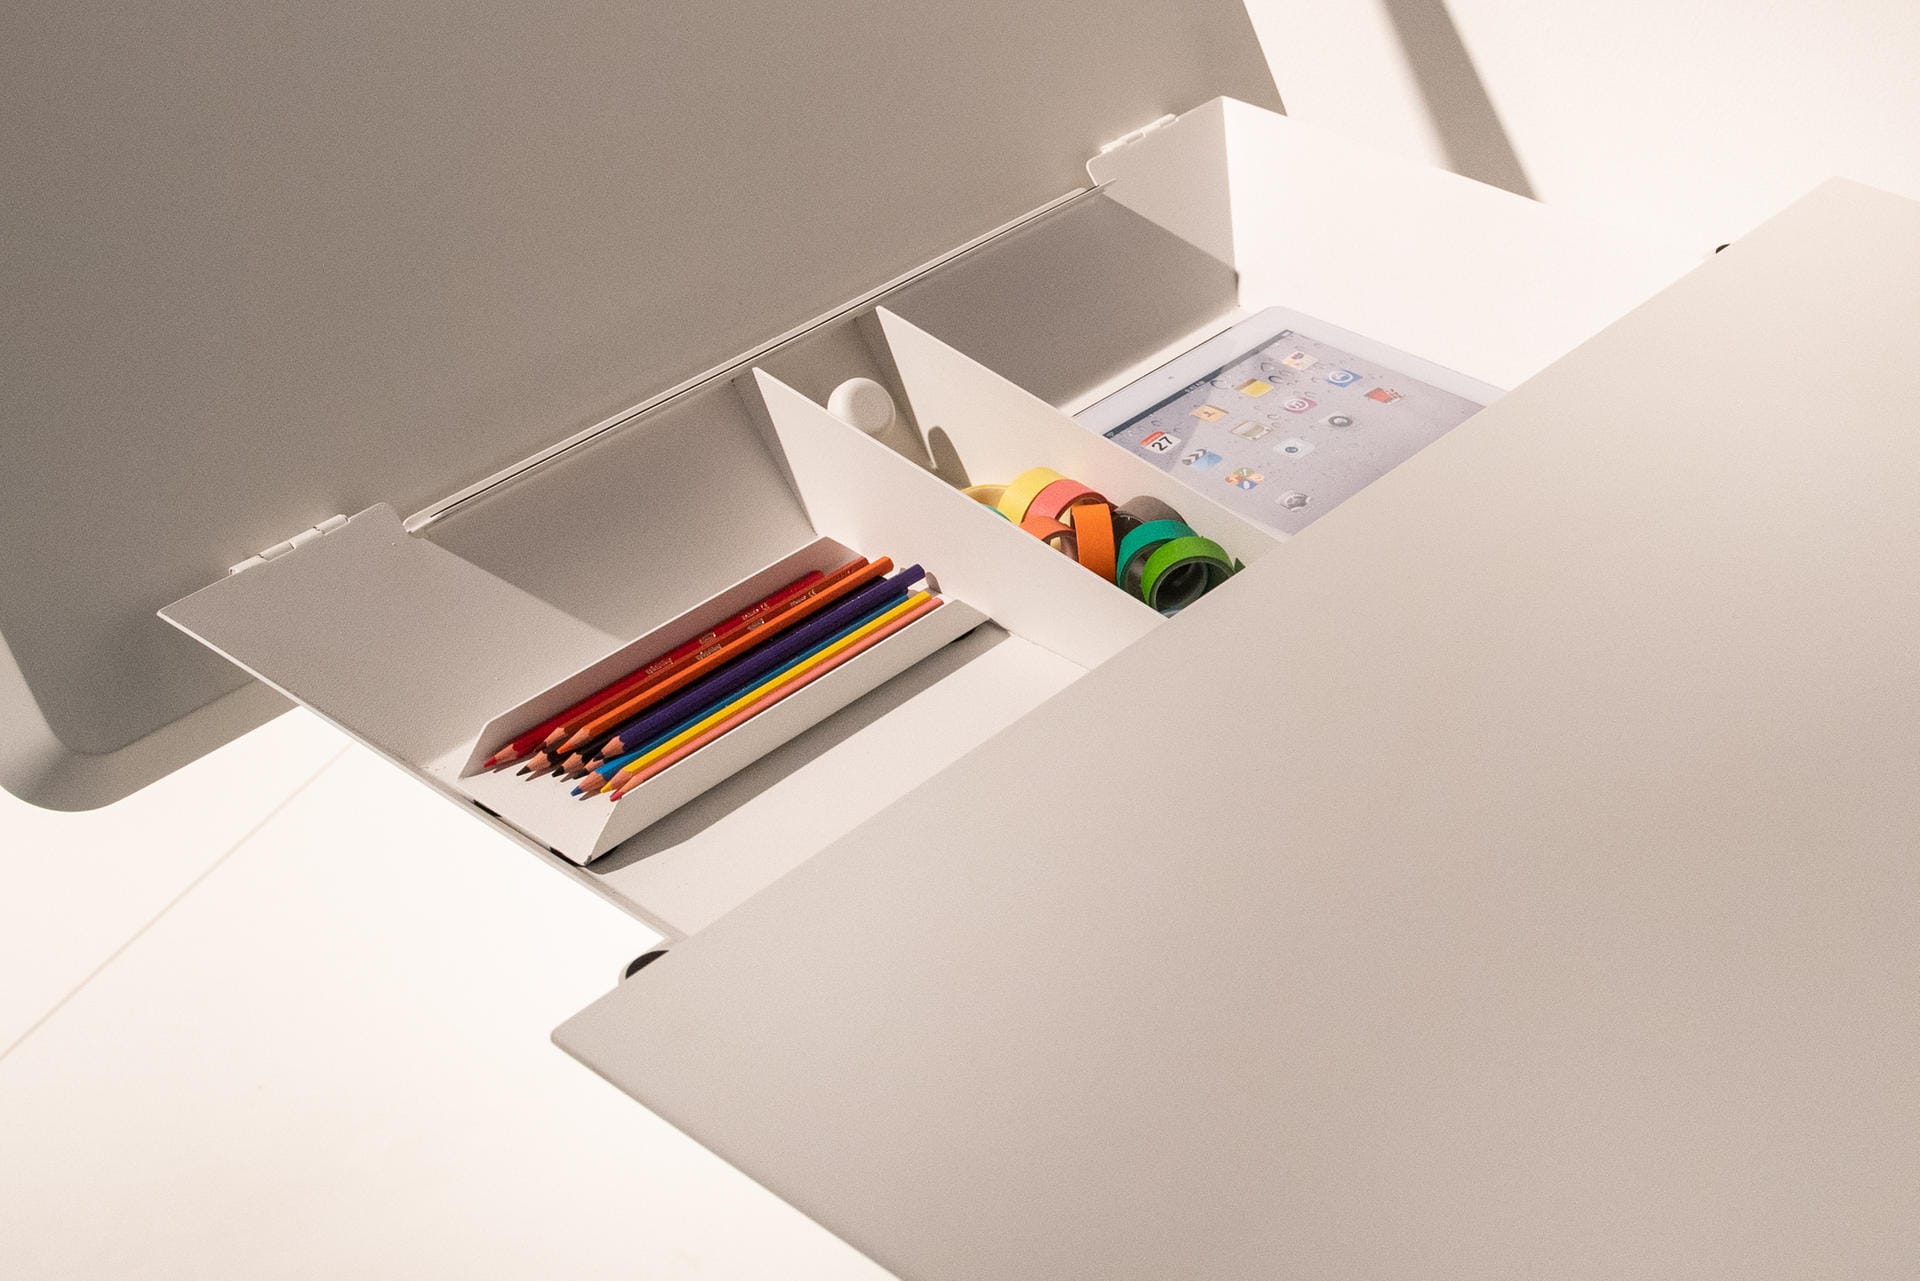 Tisch mit Stauraum: Auch kleine Schreibtische bieten Platz unter ihrer hochklappbaren Platte, wie dieses Modell von Müller Small Living.